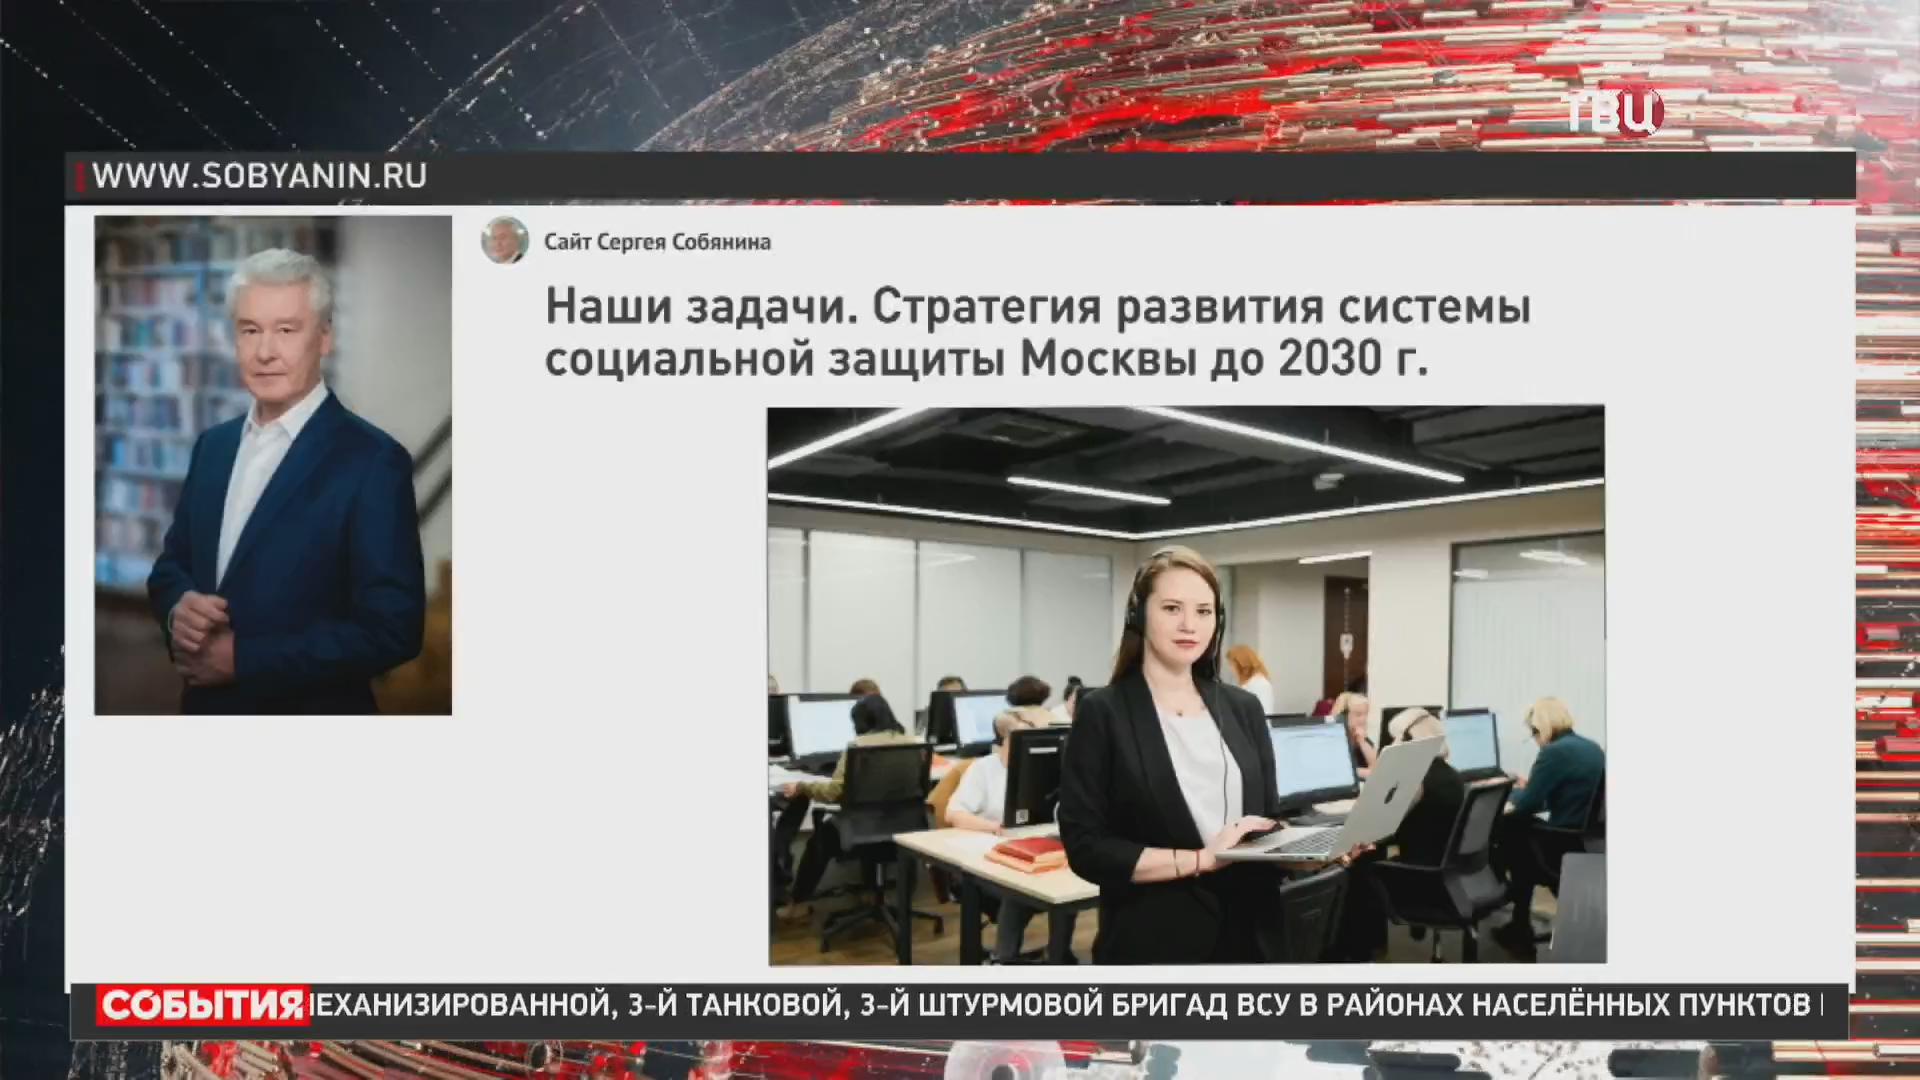 Собянин рассказал о стратегии развития социальной защиты Москвы до 2030 года / События на ТВЦ